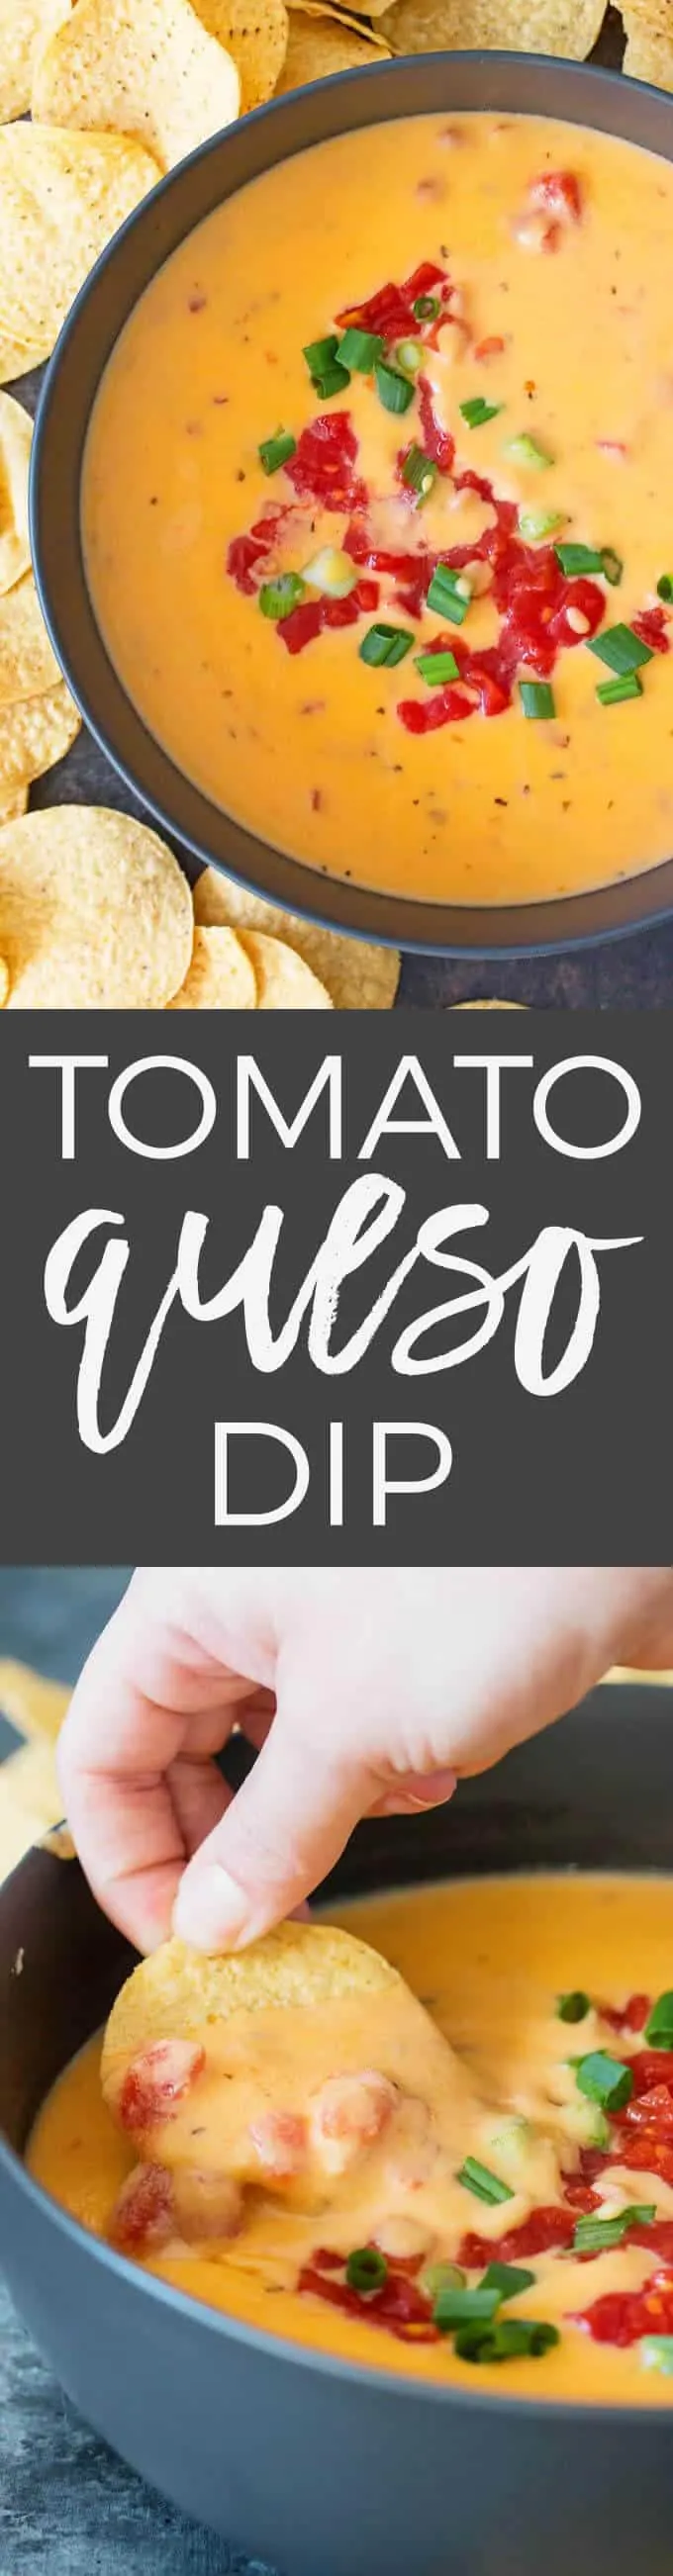 Tomato Queso Dip Recipe Pin